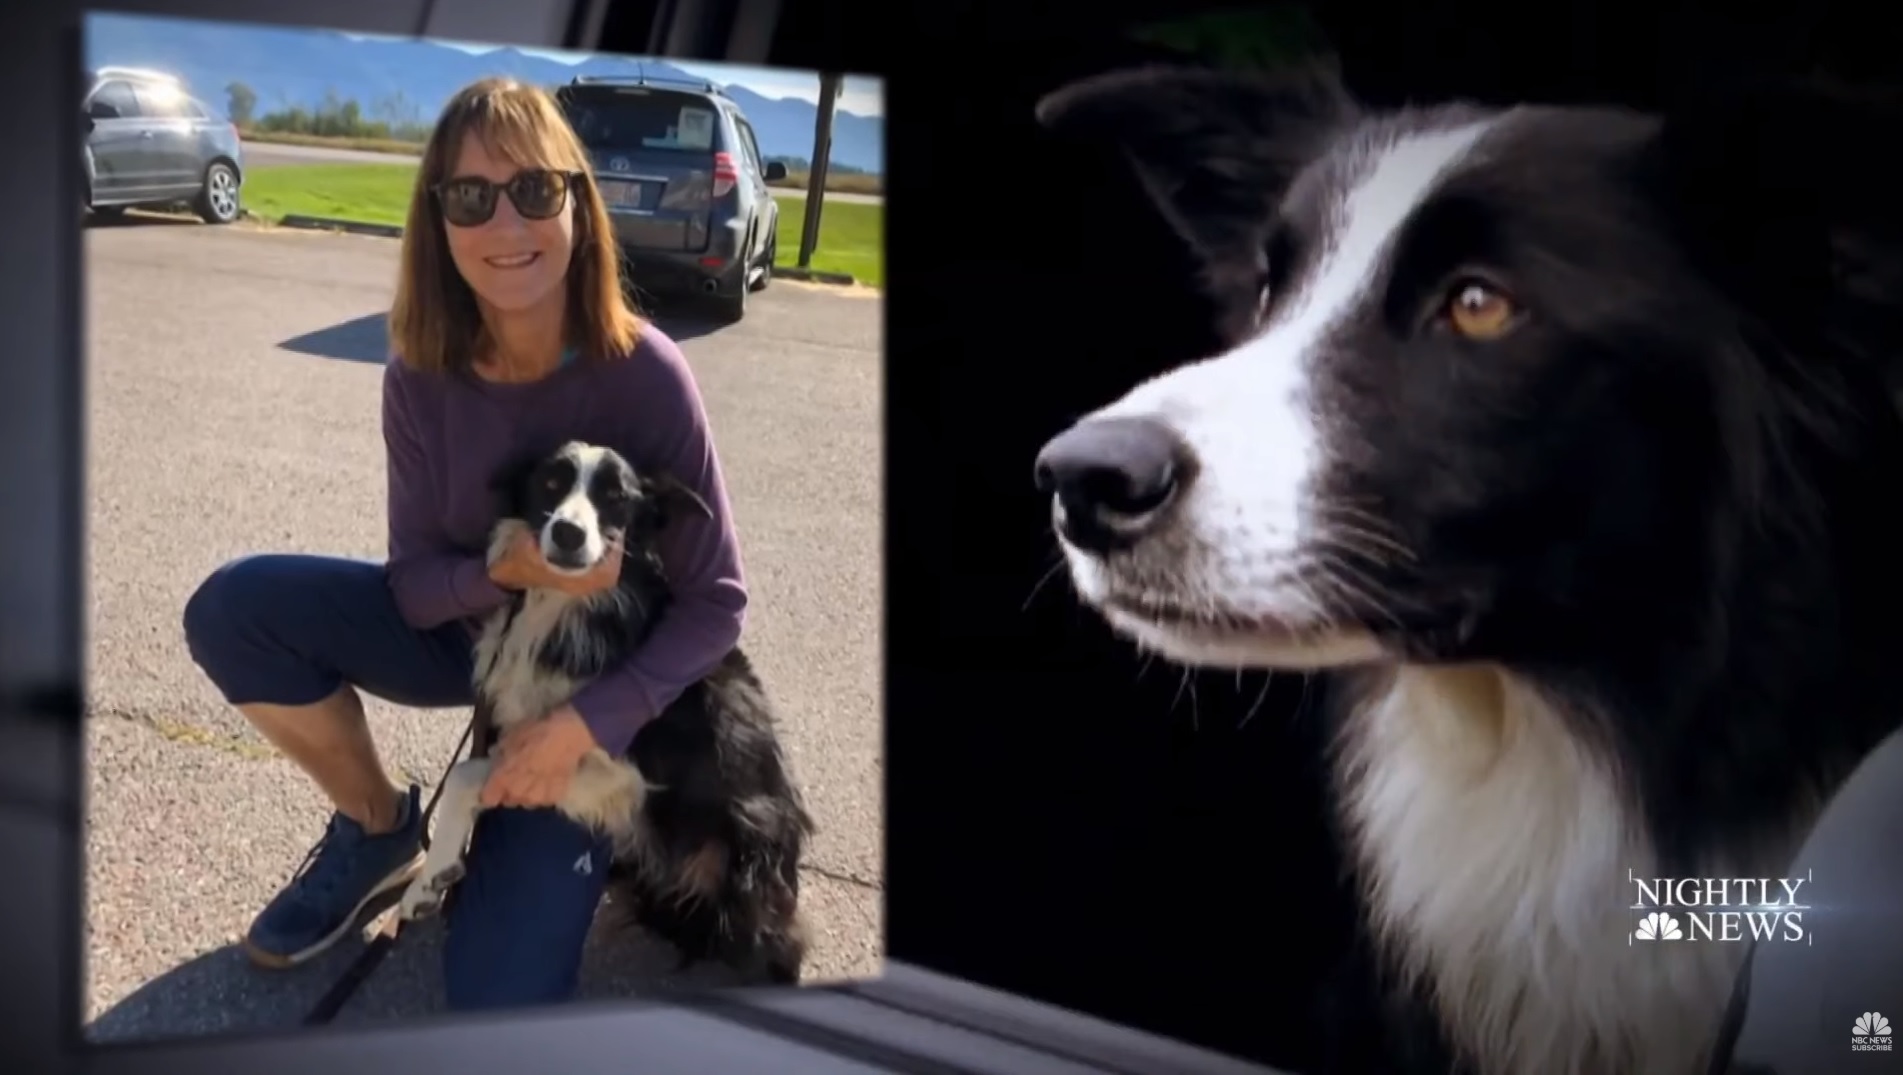 Etats-Unis : une Américaine quitte son travail pour retrouver son chien disparu